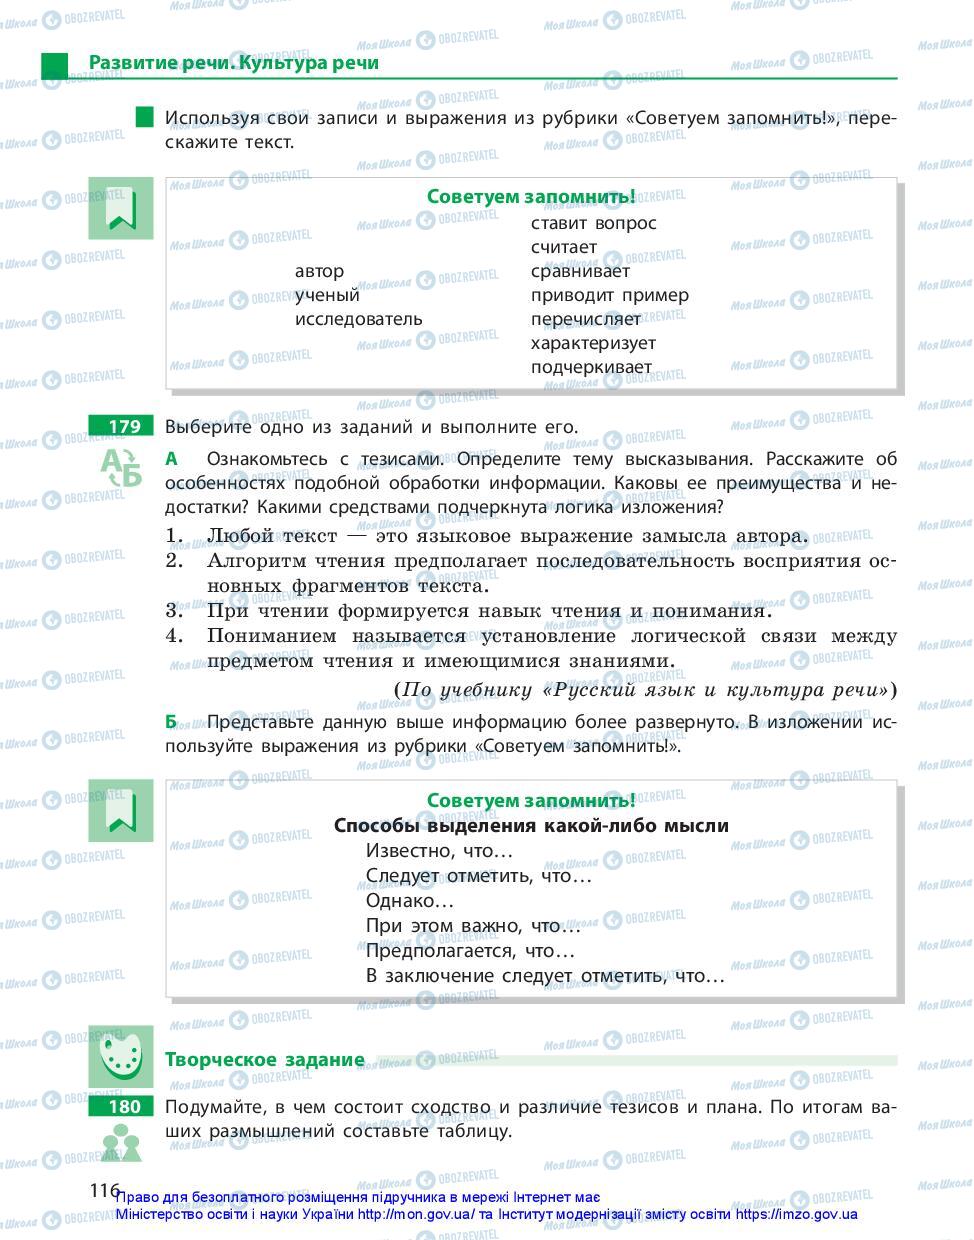 Підручники Російська мова 10 клас сторінка 116